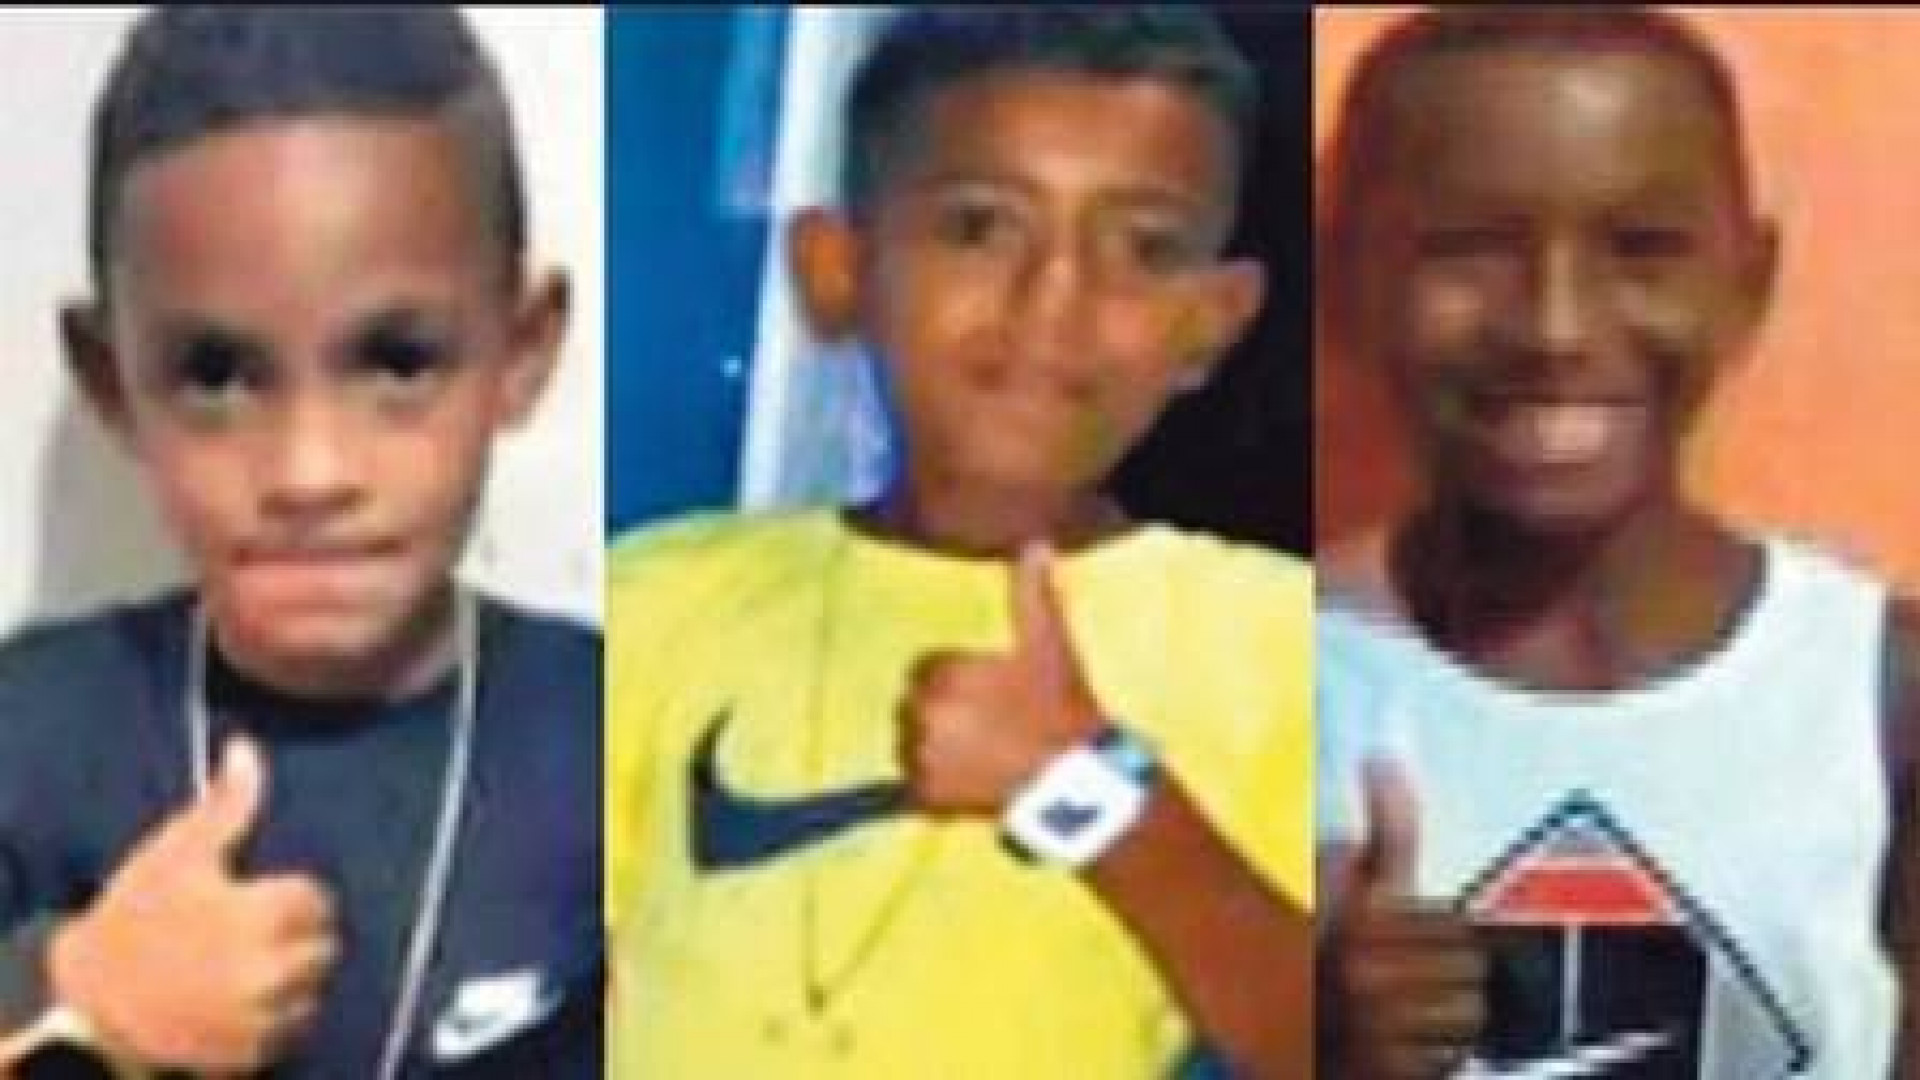 Os corpos de Lucas Matheus da Silva, Alexandre da Silva, e Fernando Henrique Ribeiro Soares, continuam desaparecidos desde dezembro de 2020 - Reprodução